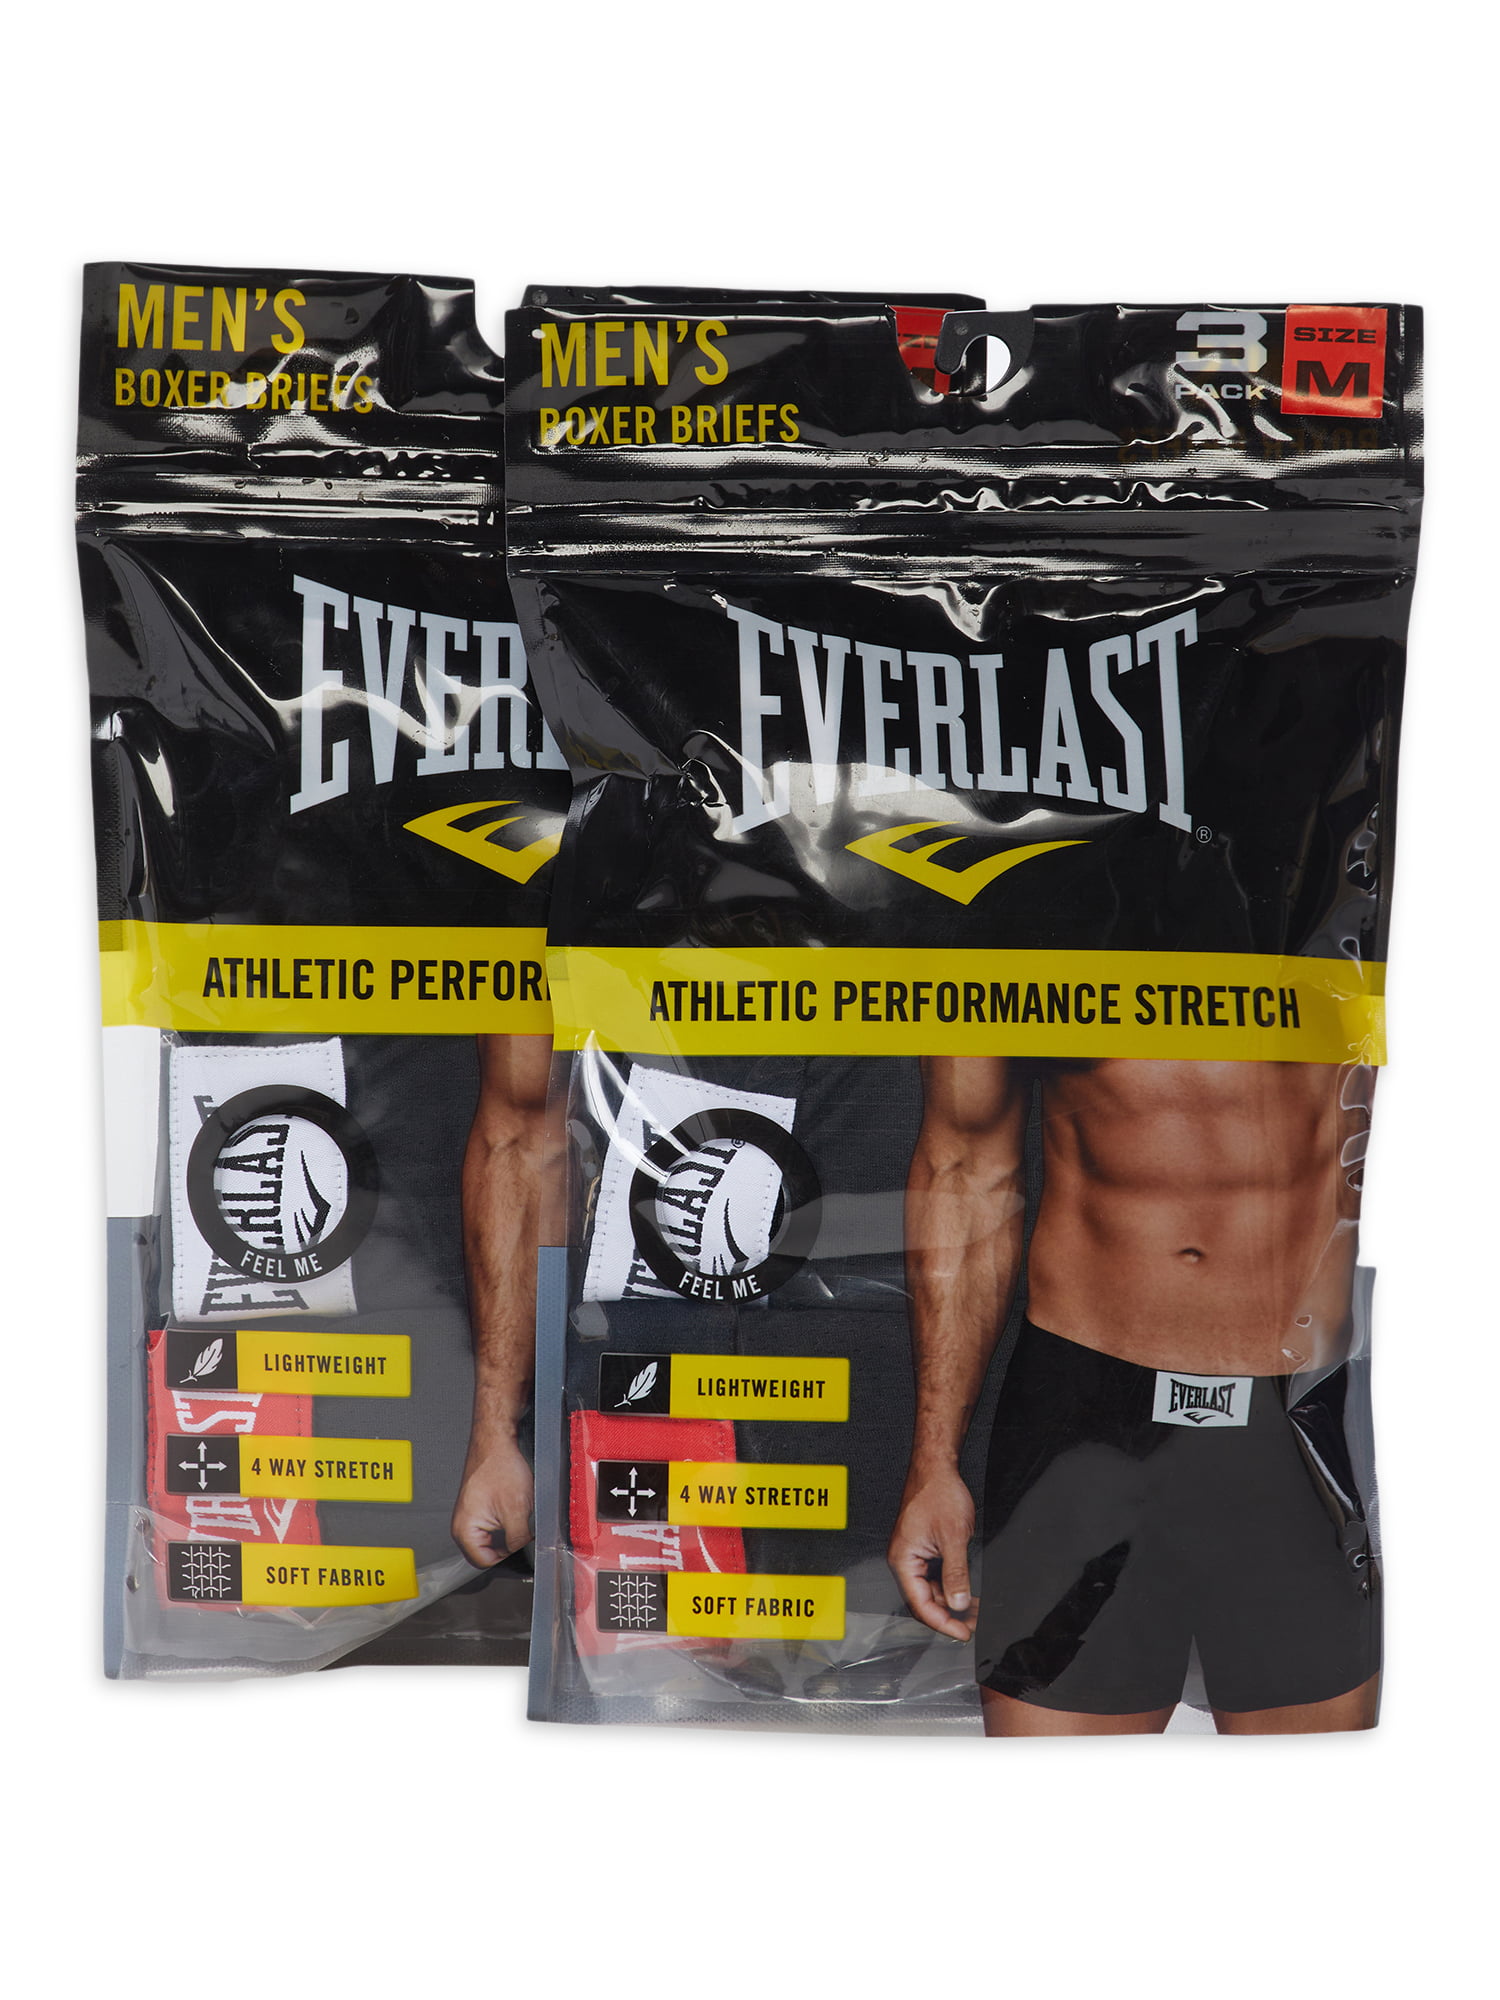 Voorouder Bijwonen Ongrijpbaar Everlast Men's Boxer Briefs, 6-Pack - Walmart.com